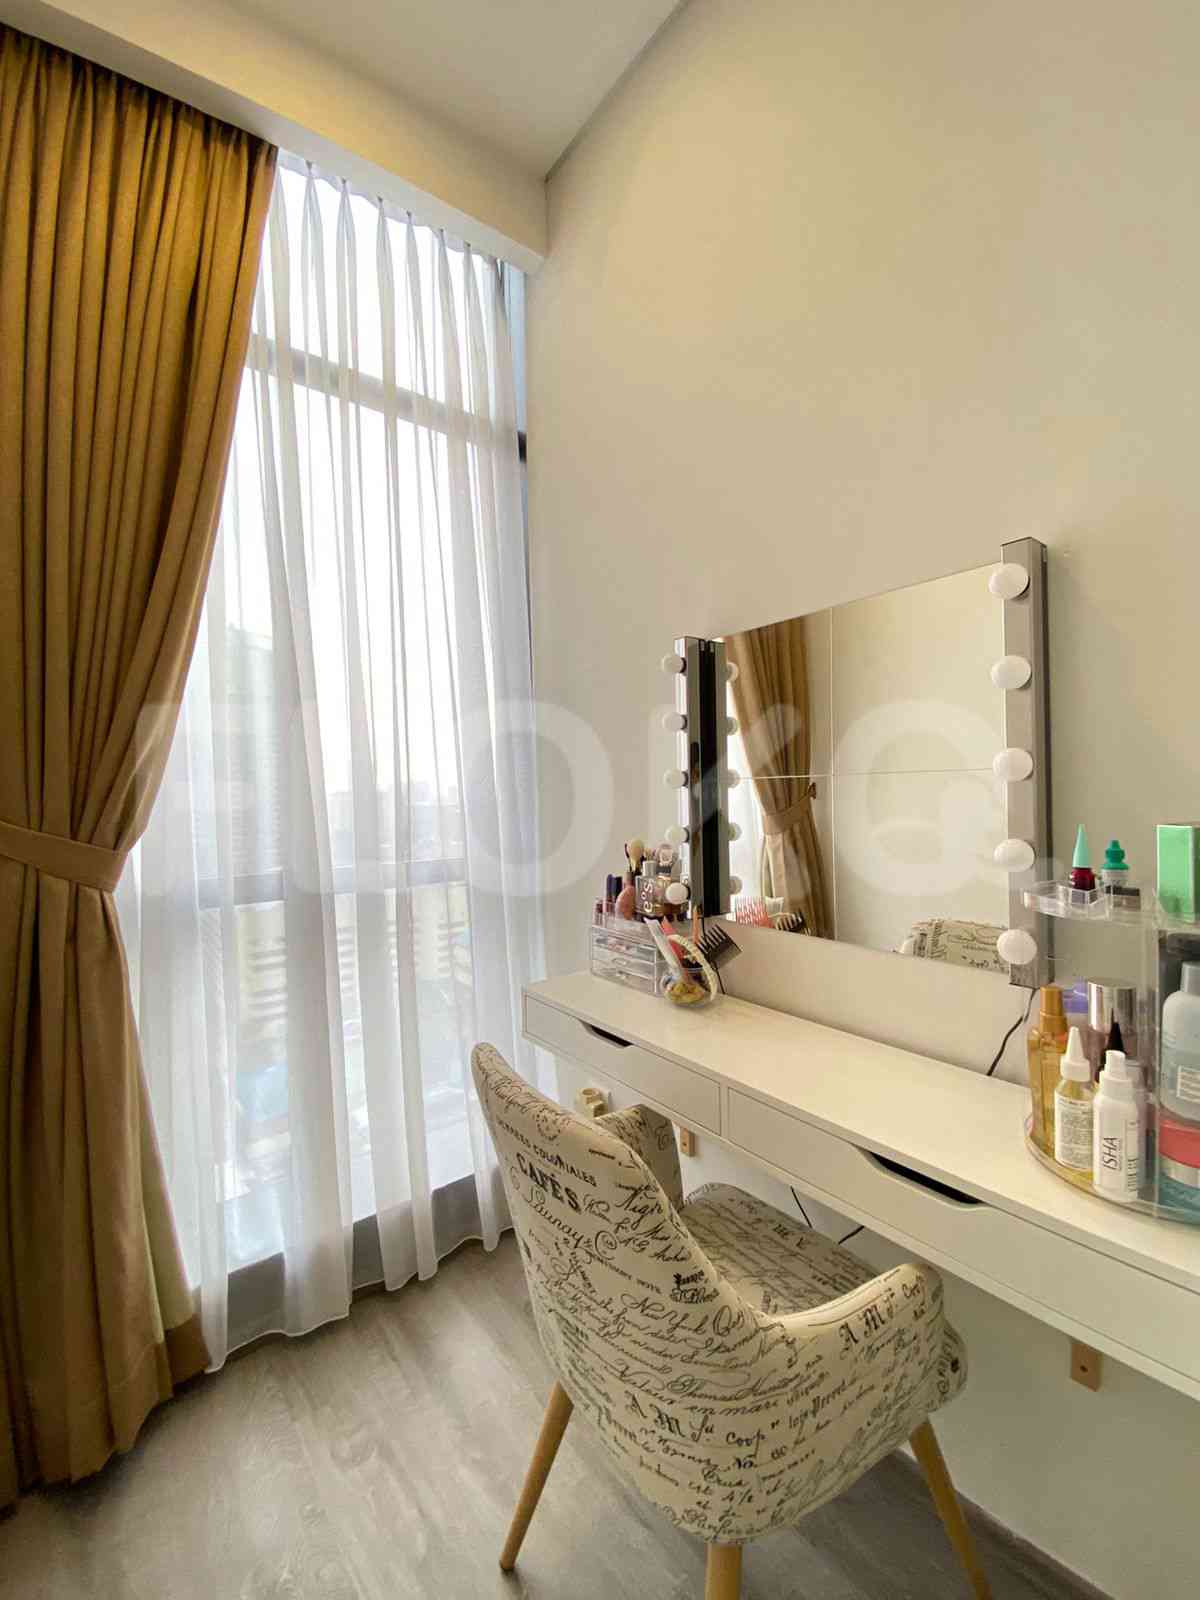 2 Bedroom on 14th Floor for Rent in Sudirman Suites Jakarta - fsu321 8